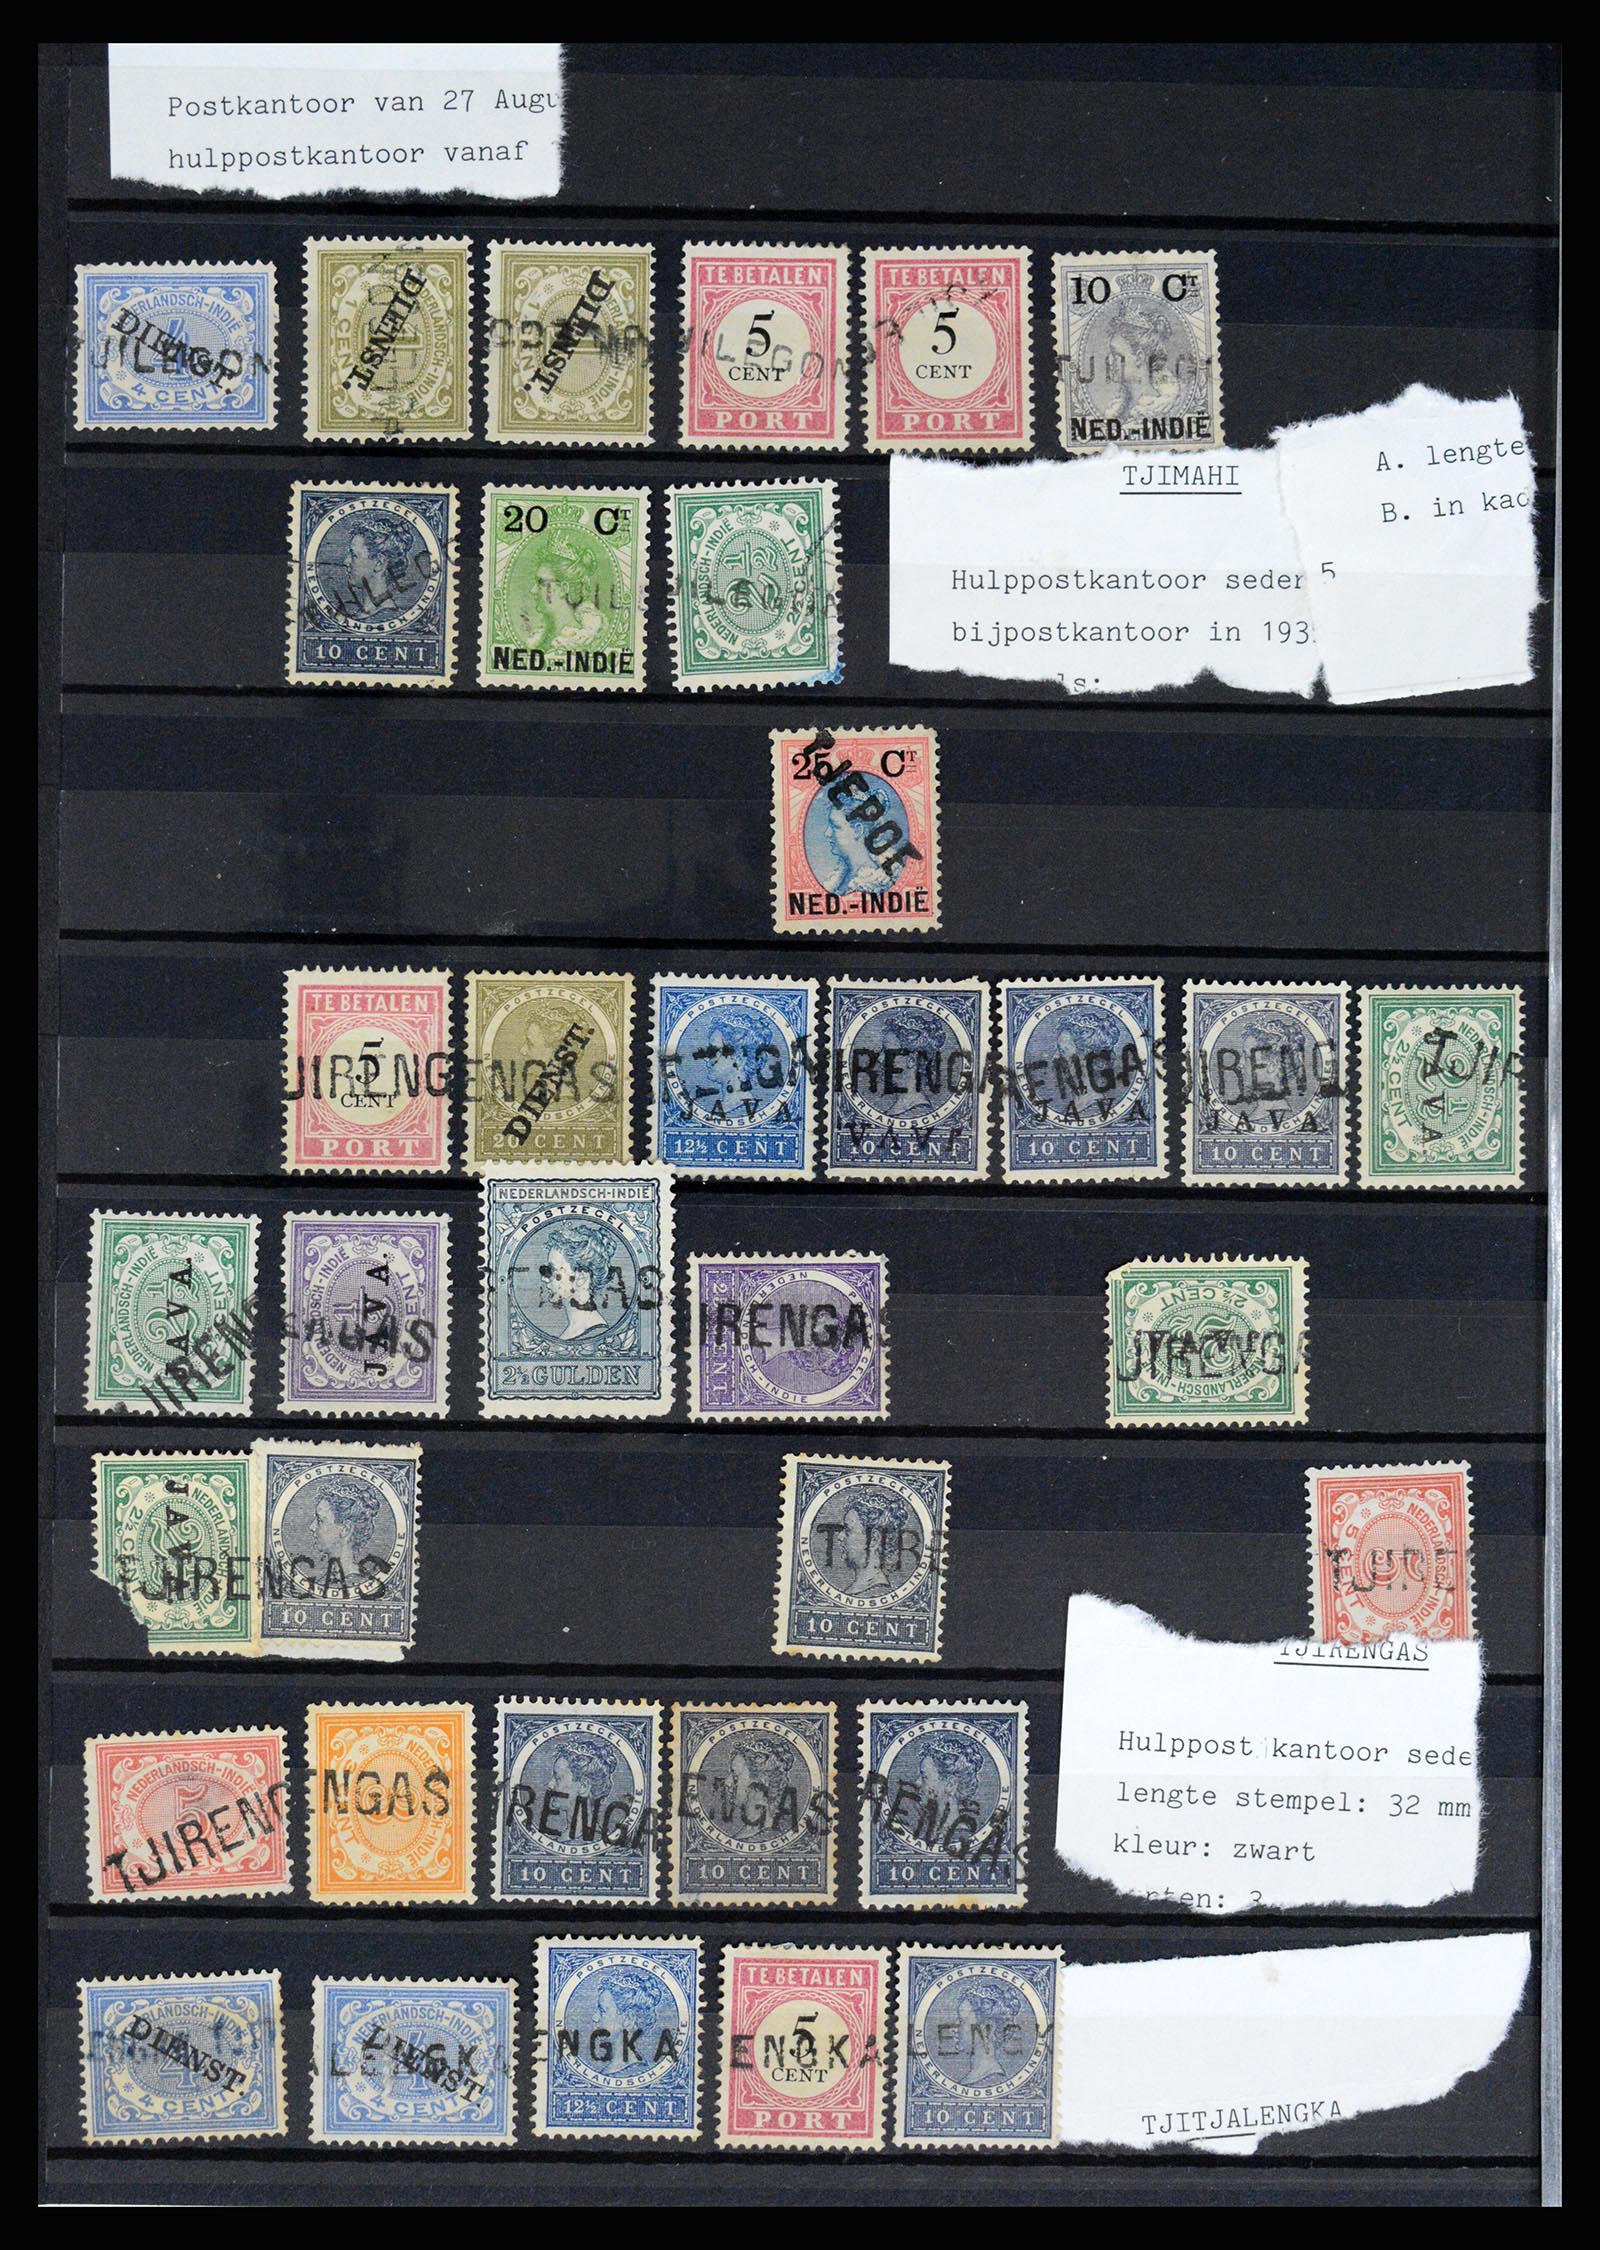 36512 074 - Stamp collection 36512 Nederlands Indië stempels 1872-1930.